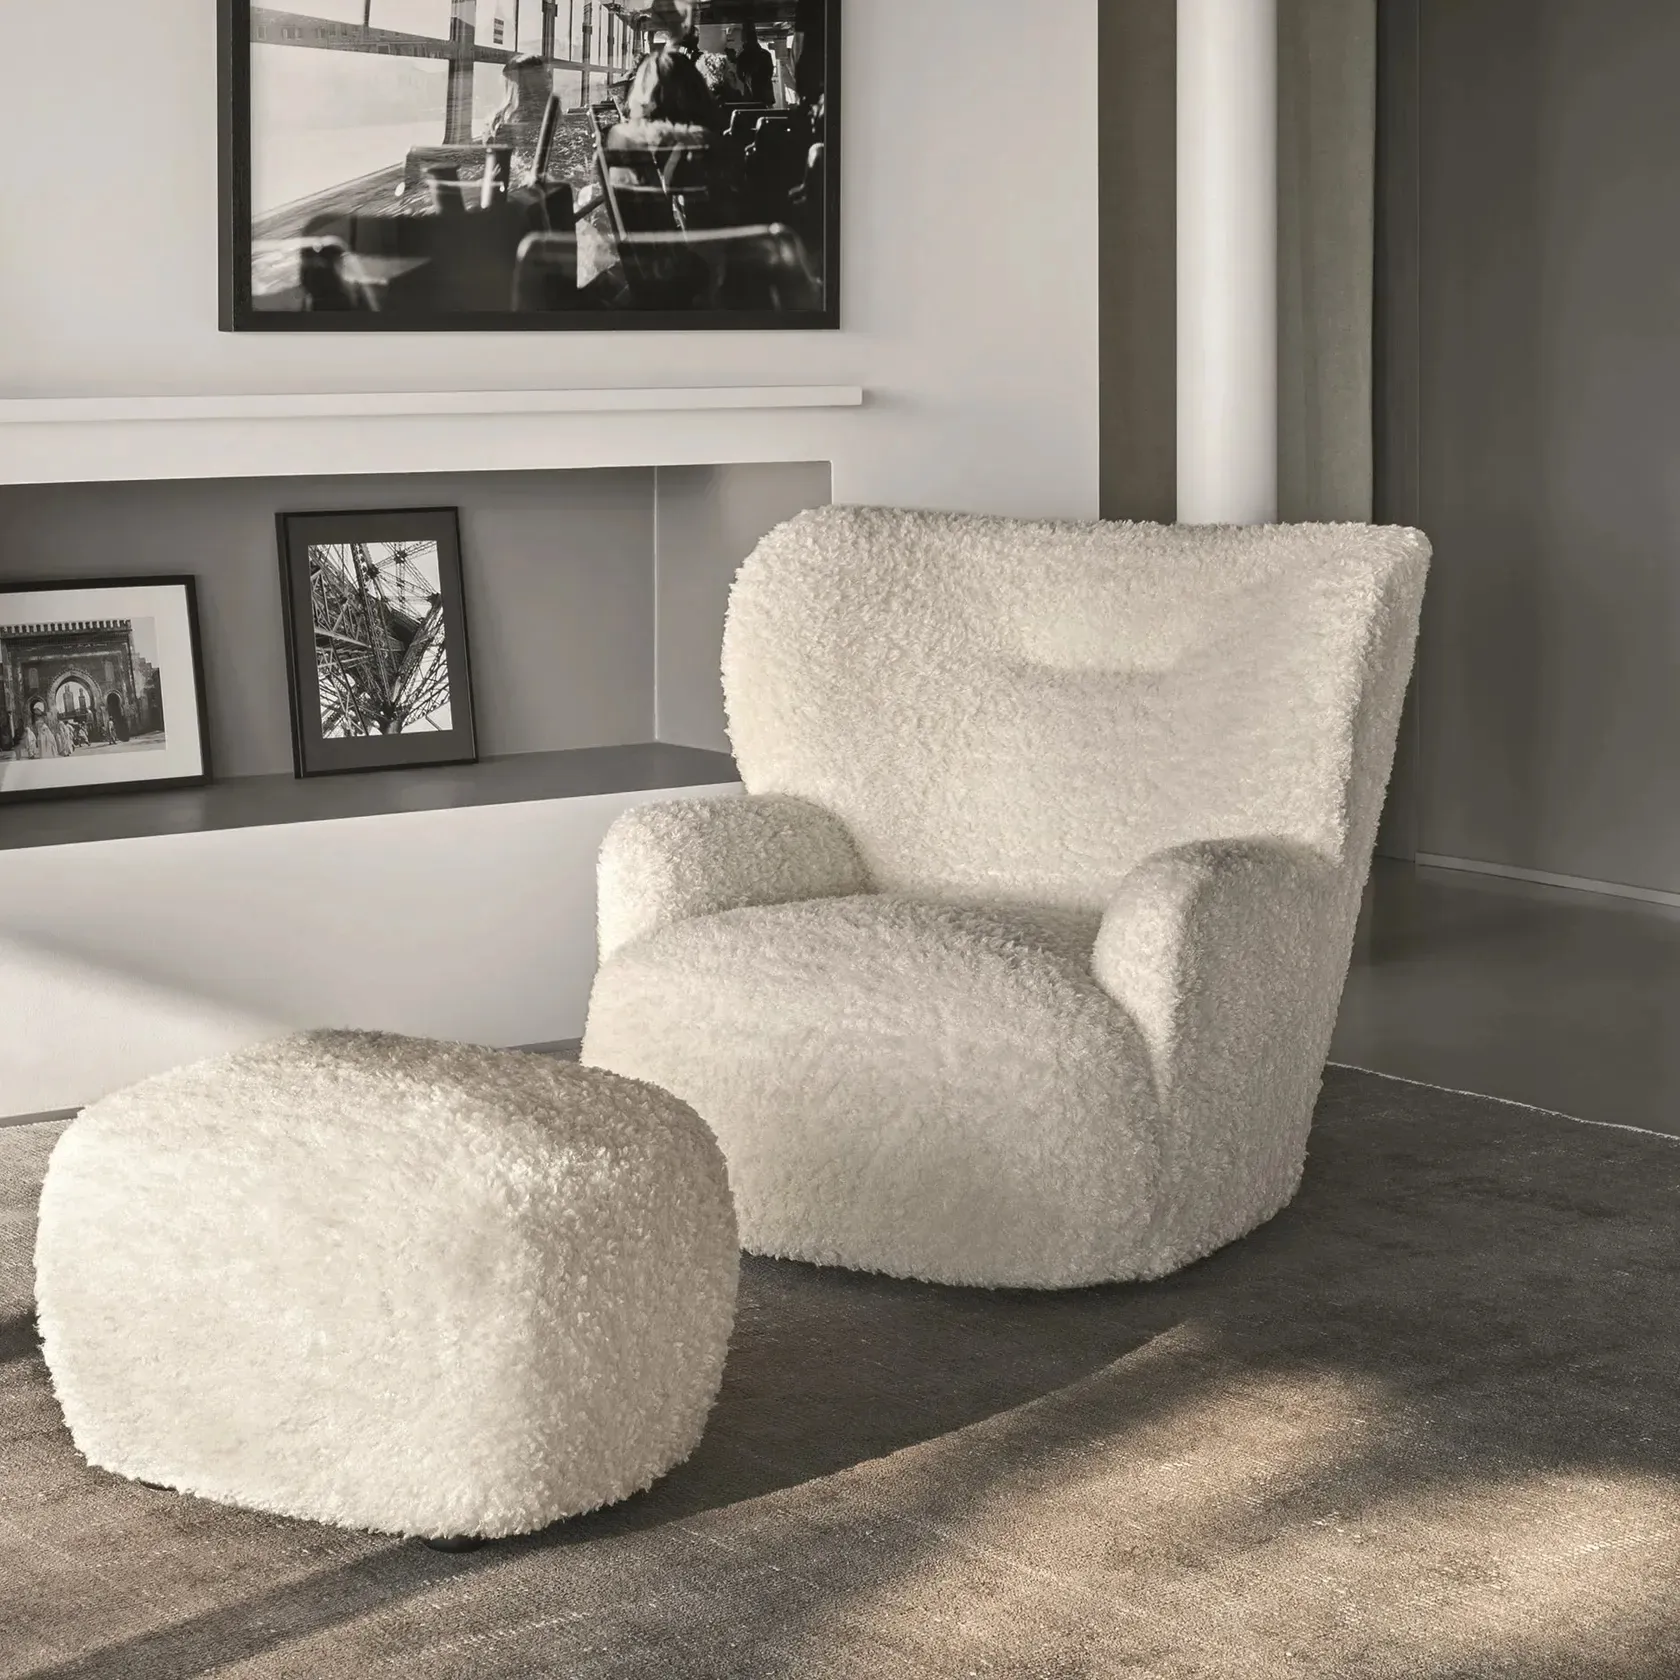 Mobili da soggiorno con struttura in legno per il tempo libero divani componibili ad angolo singolo stile nordico in legno poltrona reclinabile